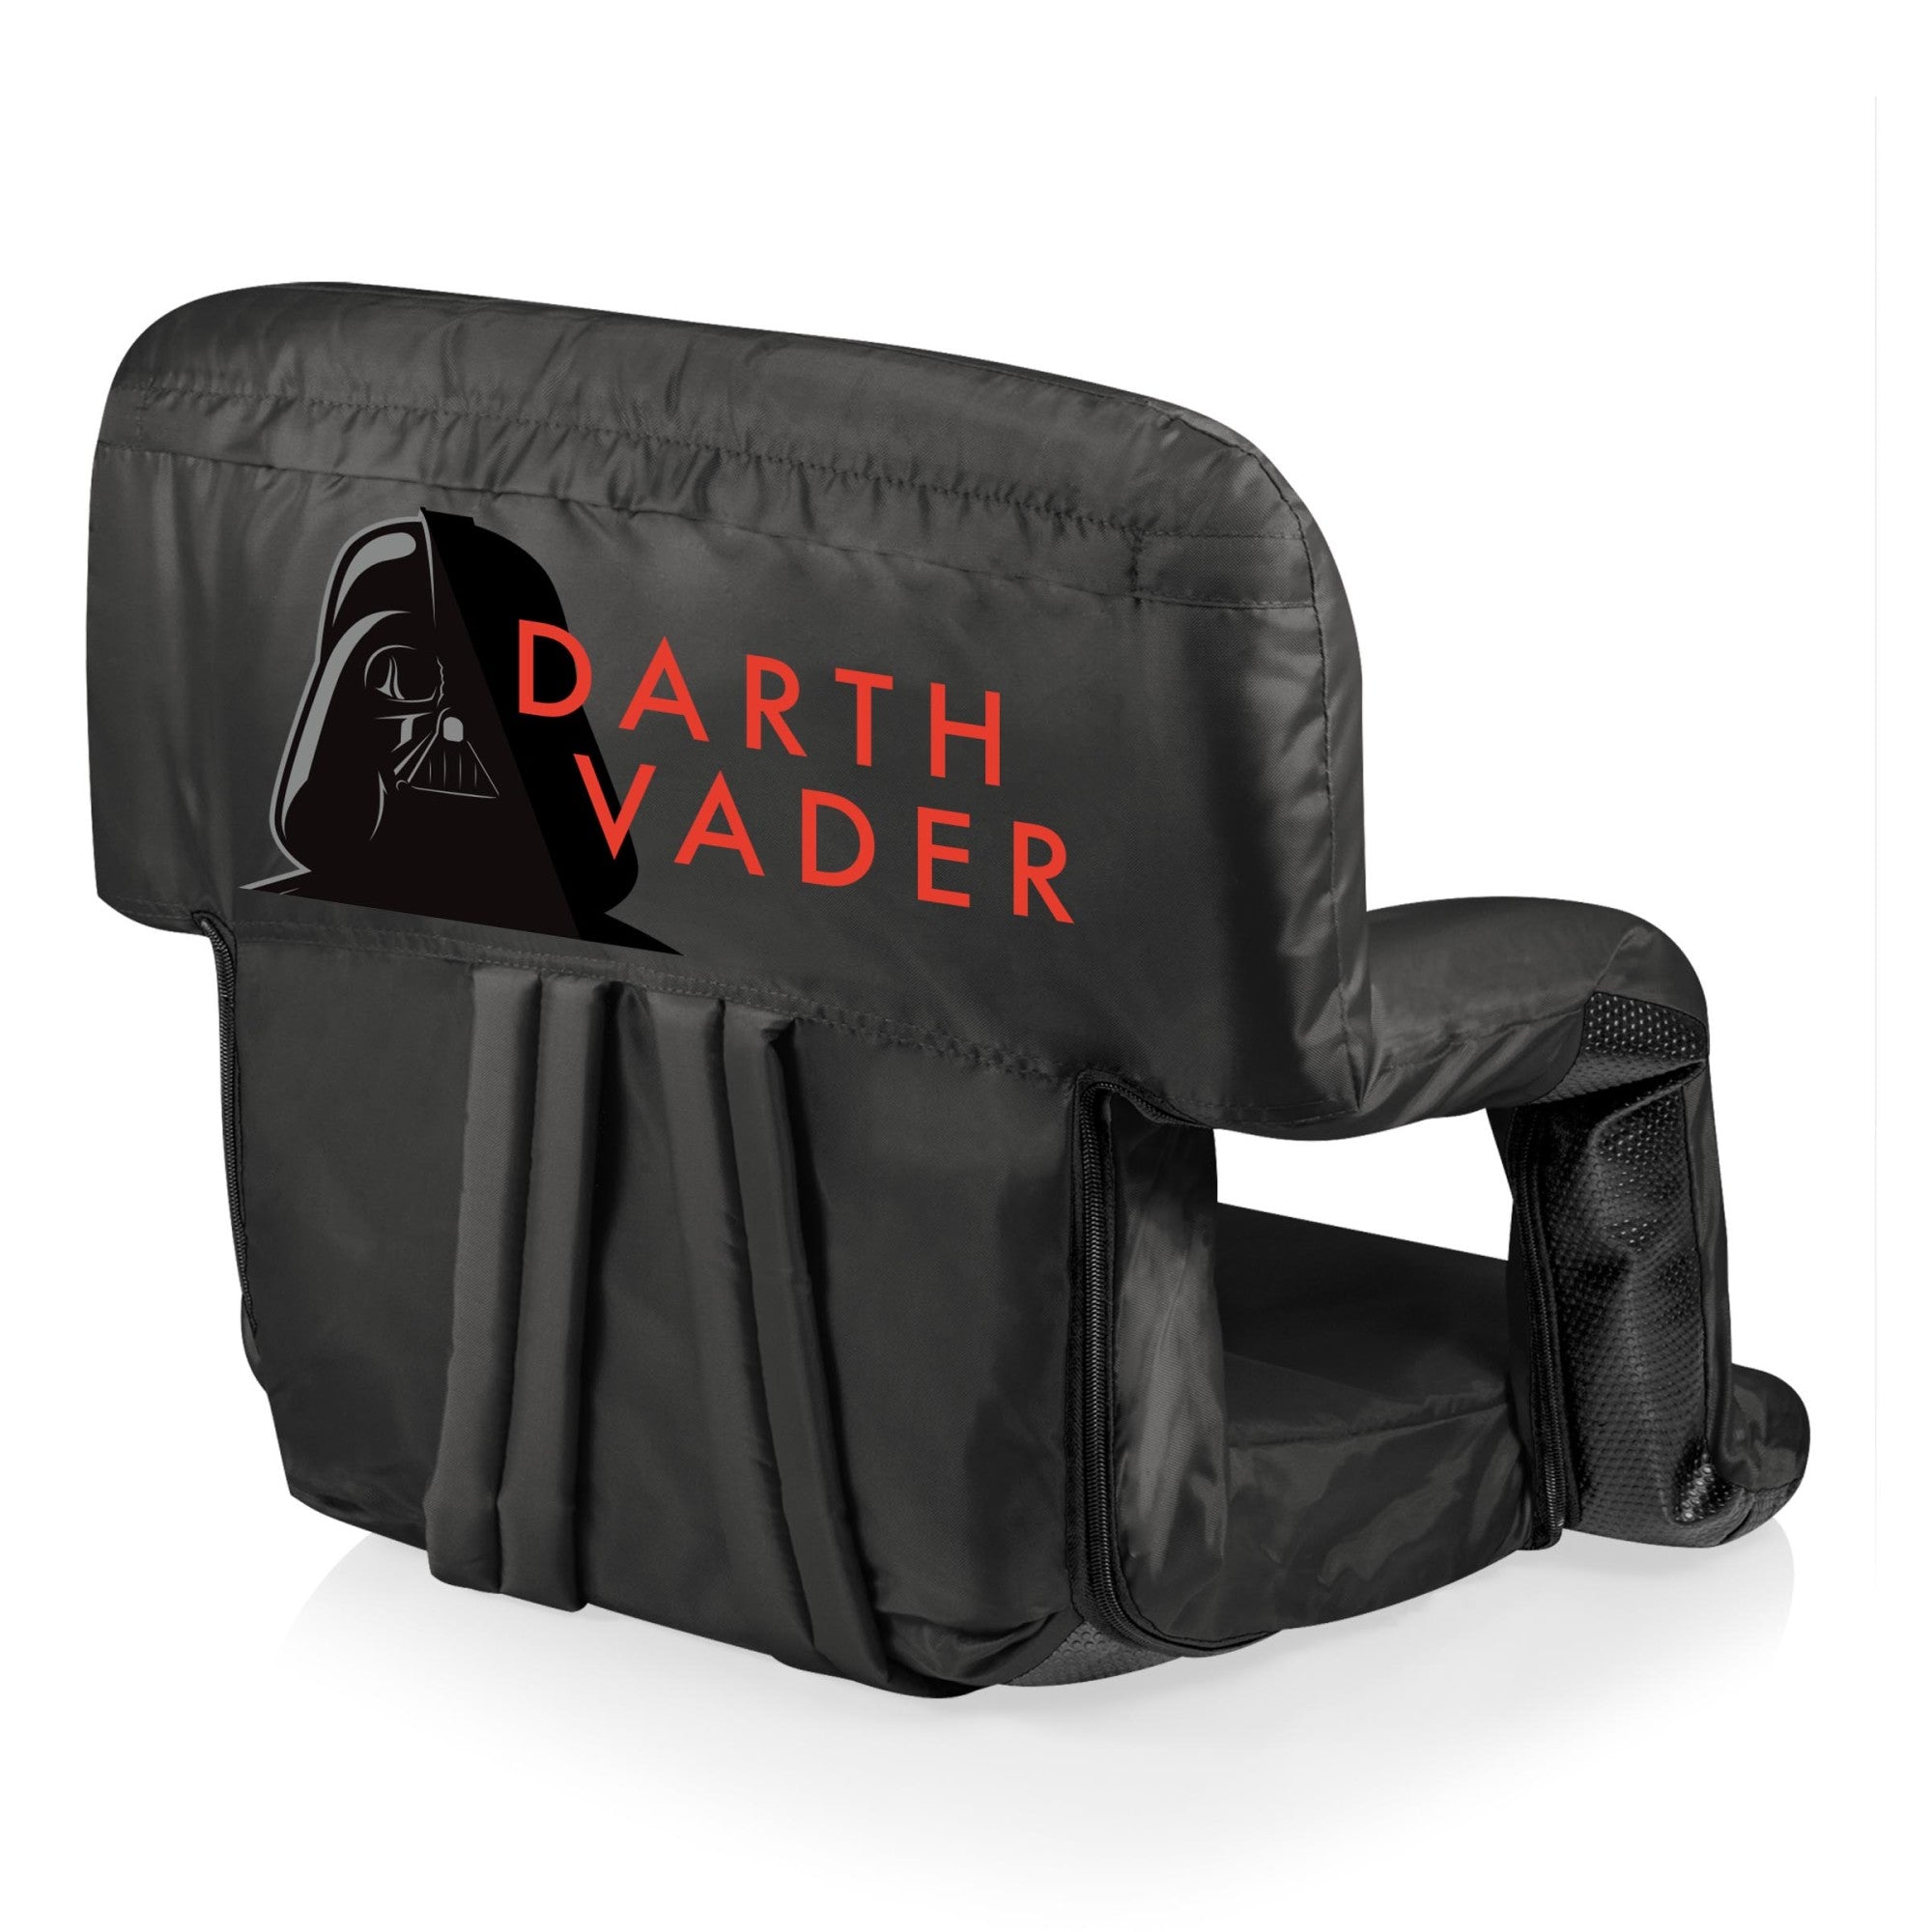 Star Wars Darth Vader - Ventura Portable Reclining Stadium Seat